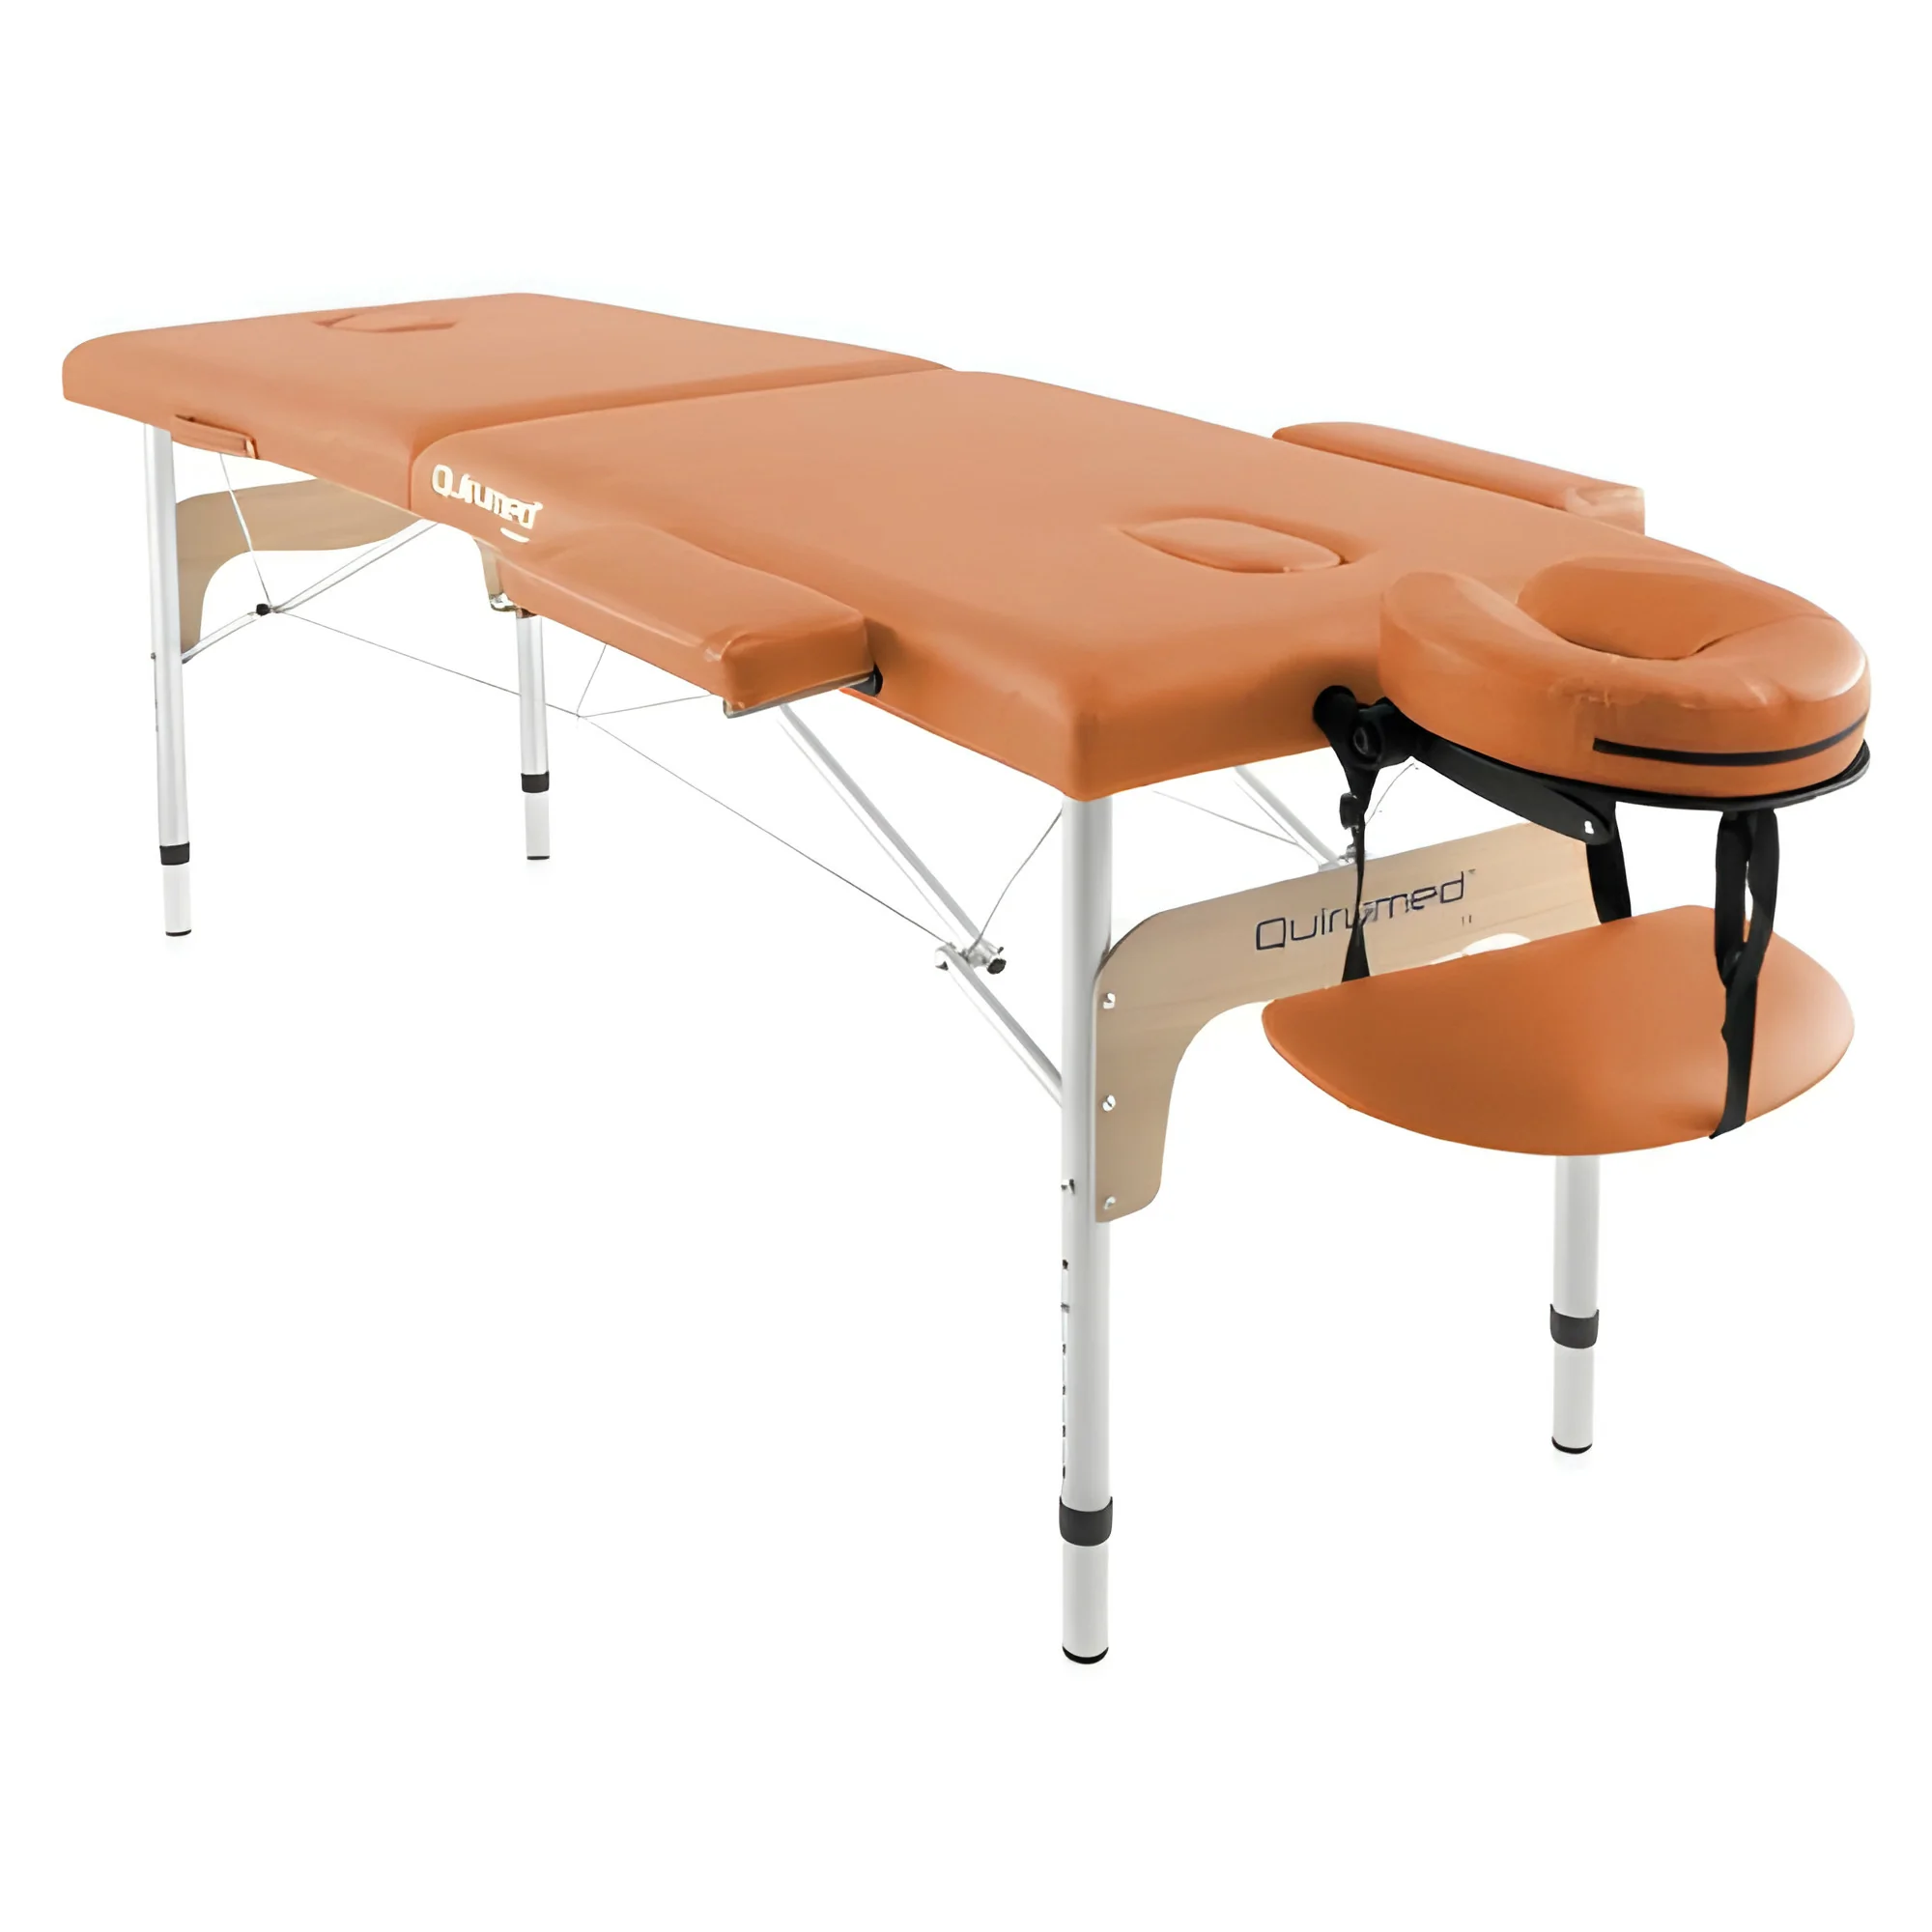 Table de massage pliante en aluminium 180 x 60 cm sans dossier Orange